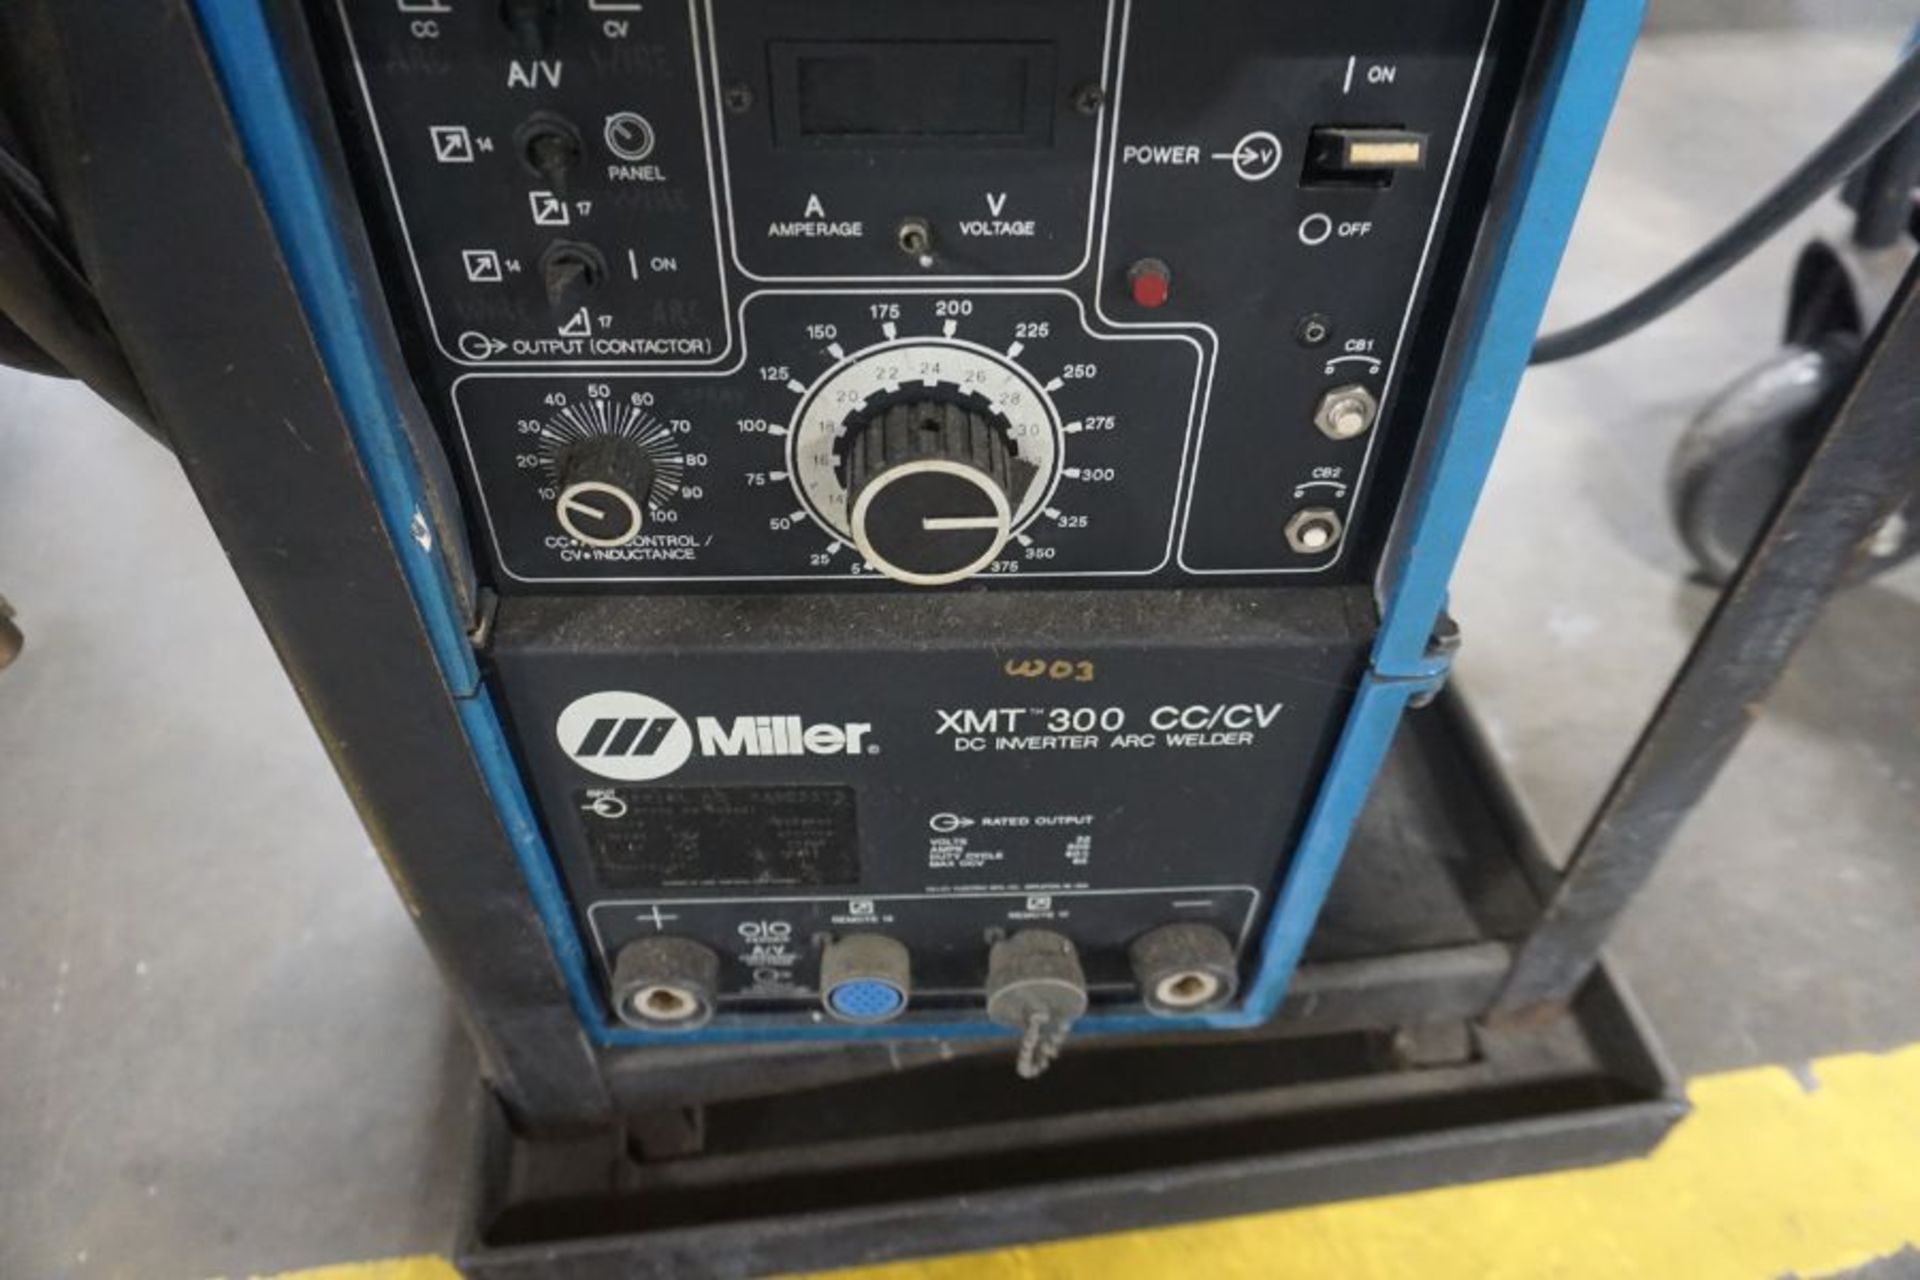 Miller XMT 300 cc/cv Welder w/ Wire Feeder - Image 3 of 4